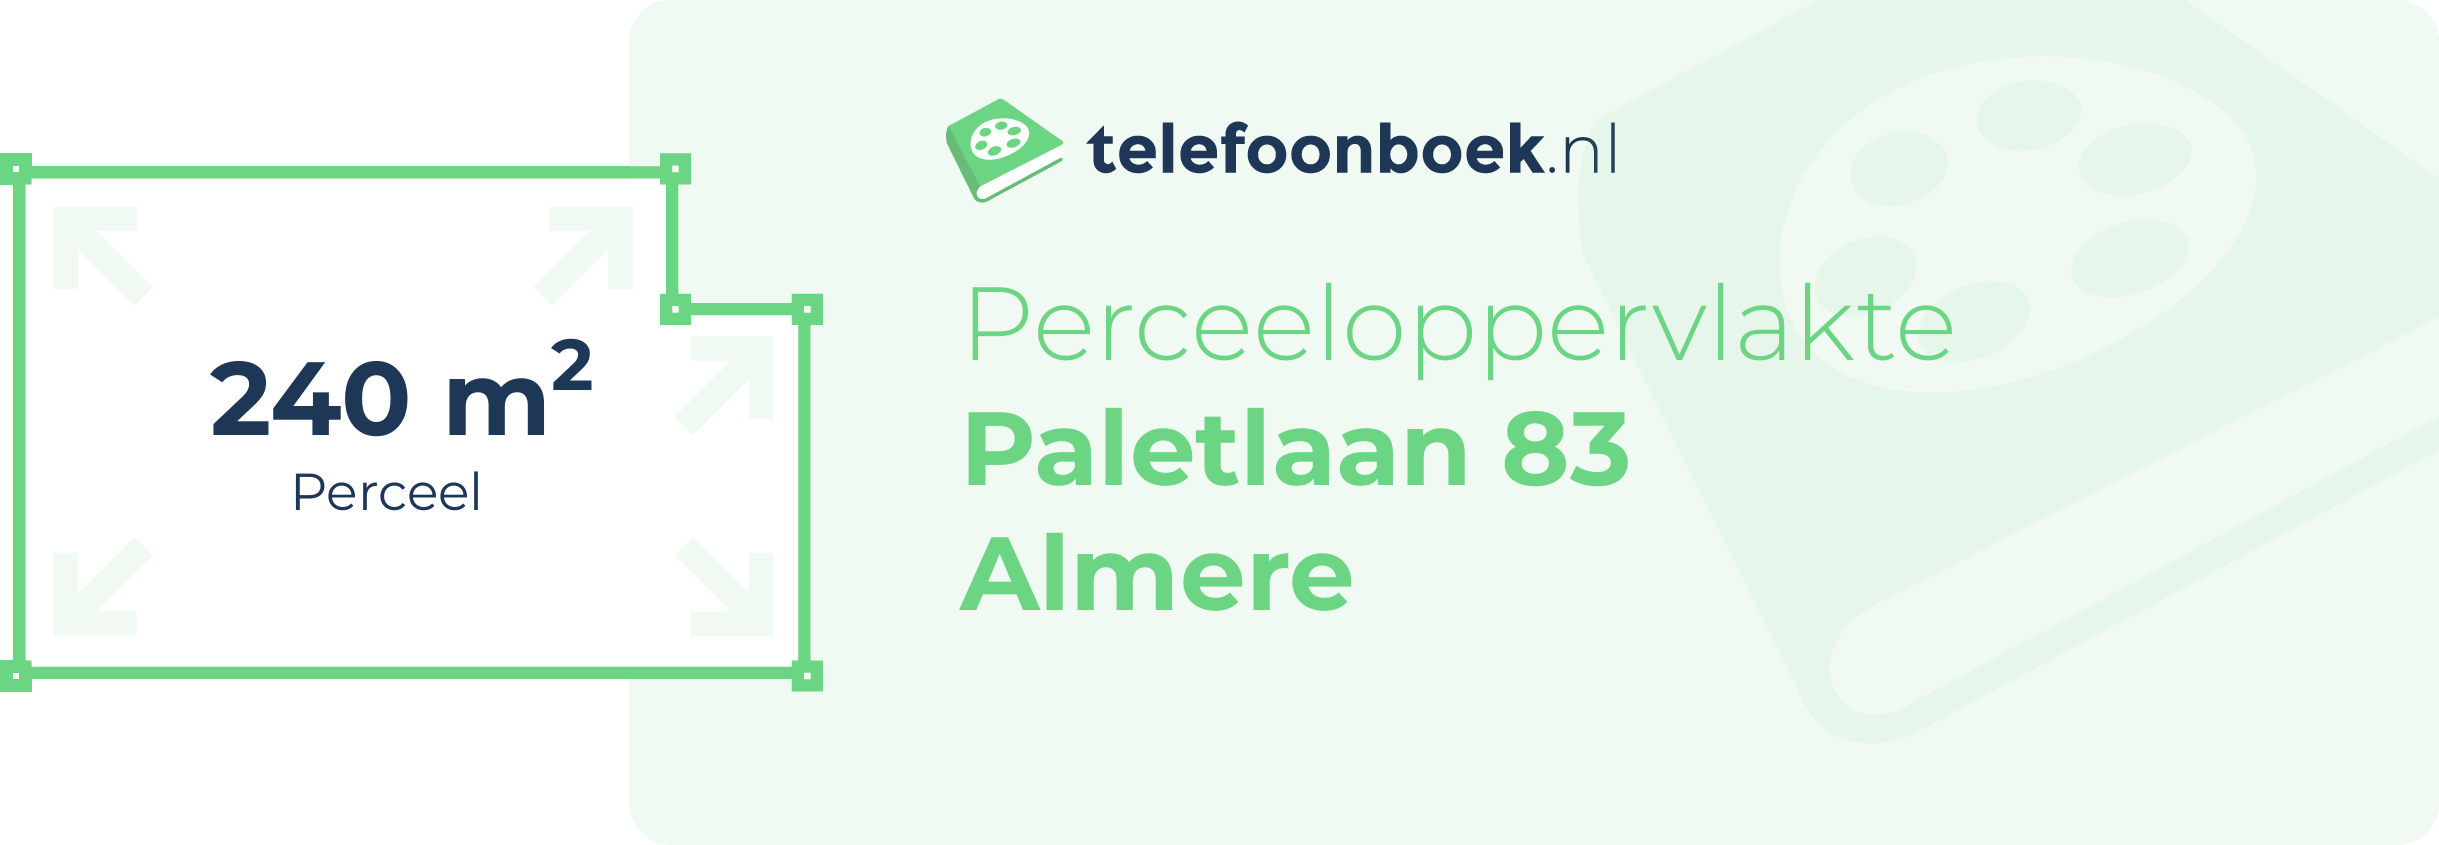 Perceeloppervlakte Paletlaan 83 Almere